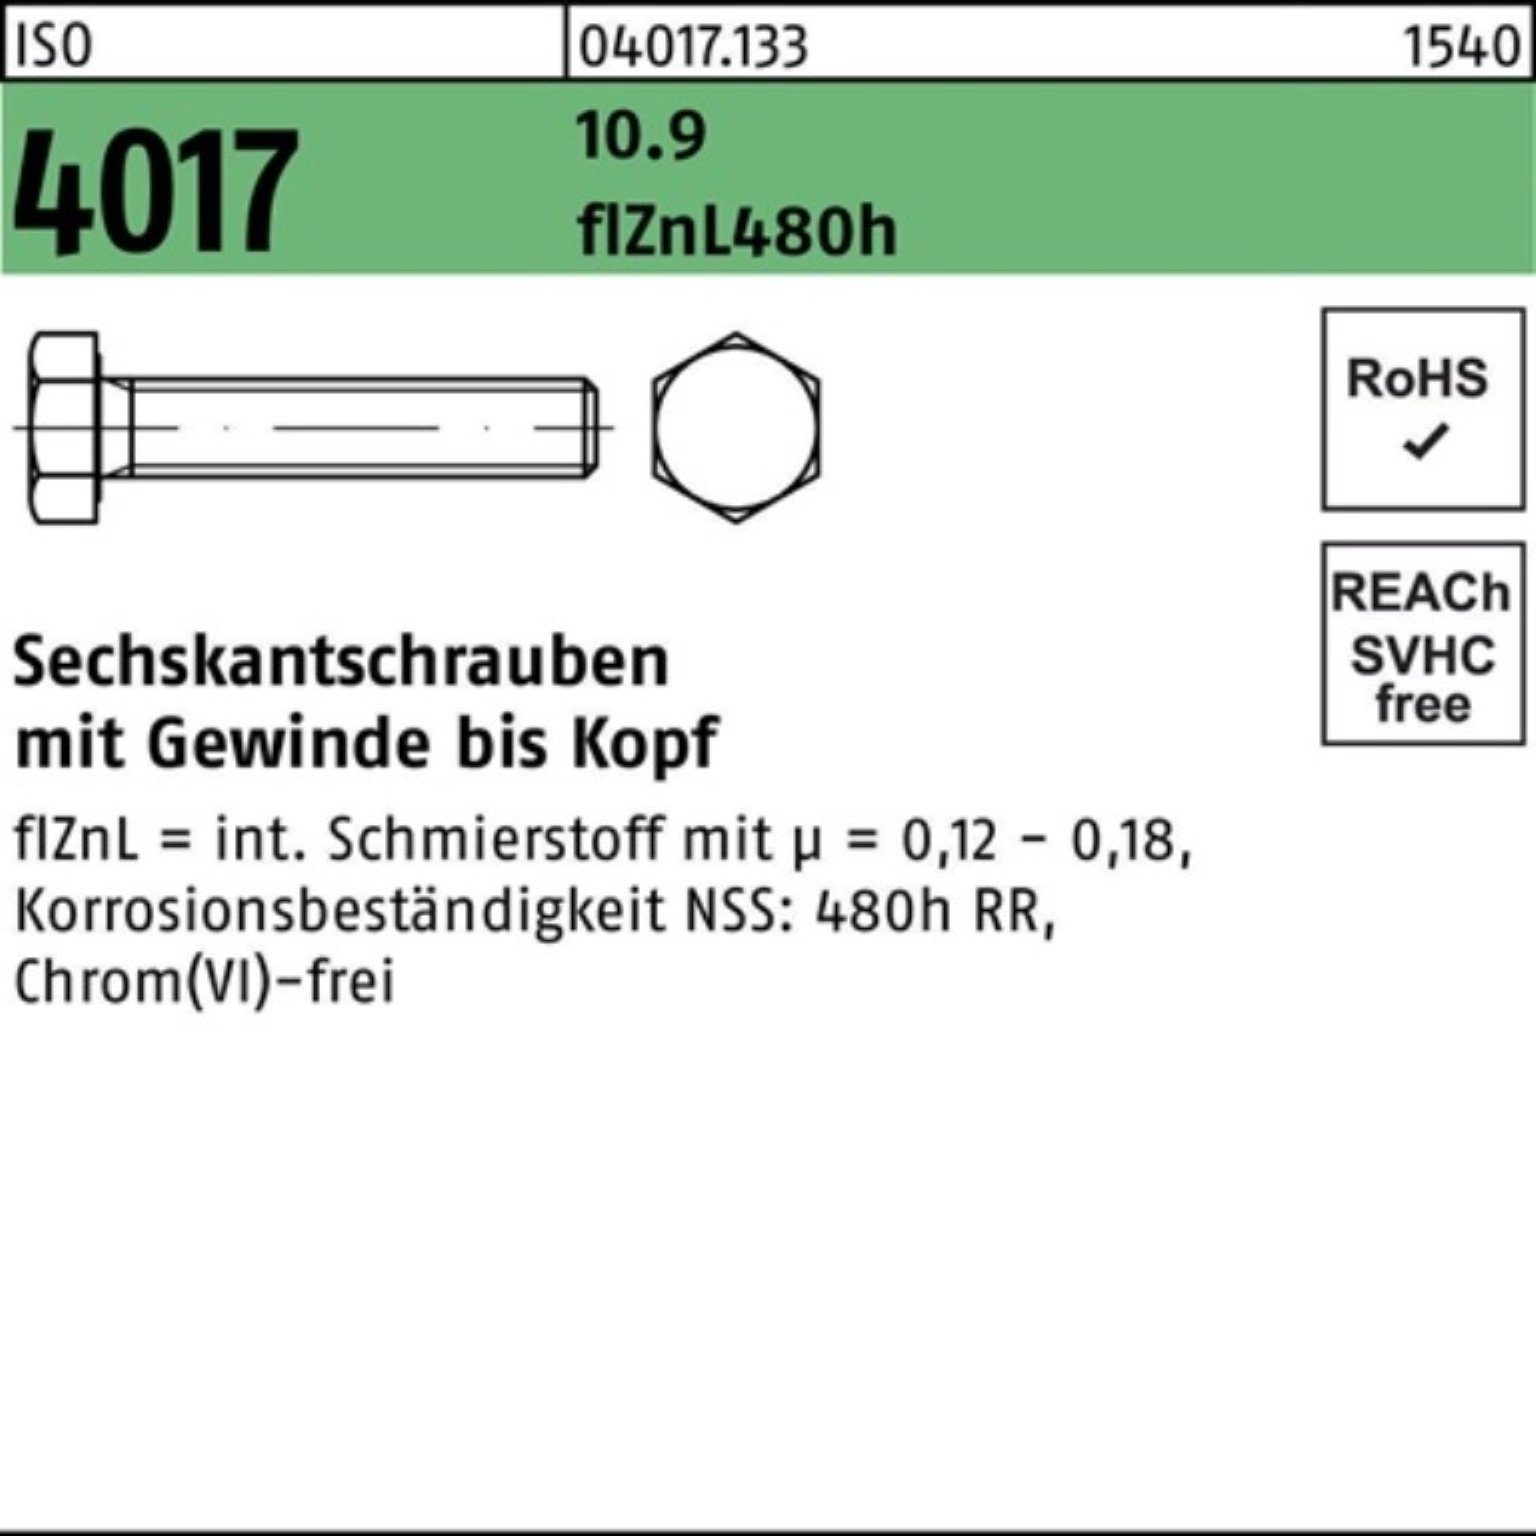 Bufab Sechskantschraube 100er ISO 1 Sechskantschraube M12x VG 4017 Pack 45 zinklamellenb. 10.9